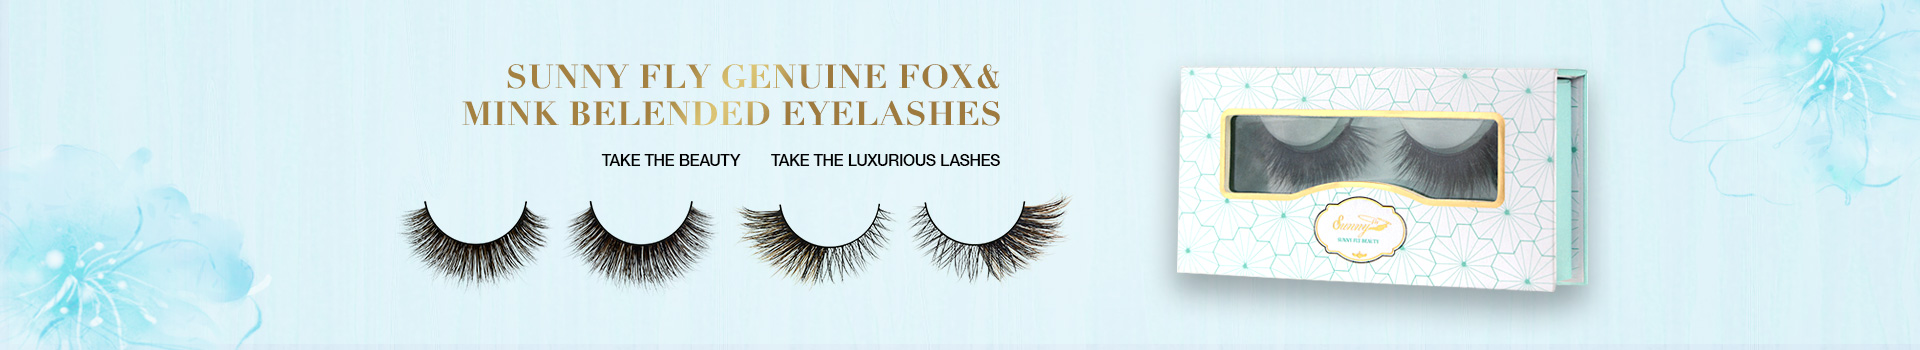 Fox & Mink Fur Blended Eyelashes FMB05